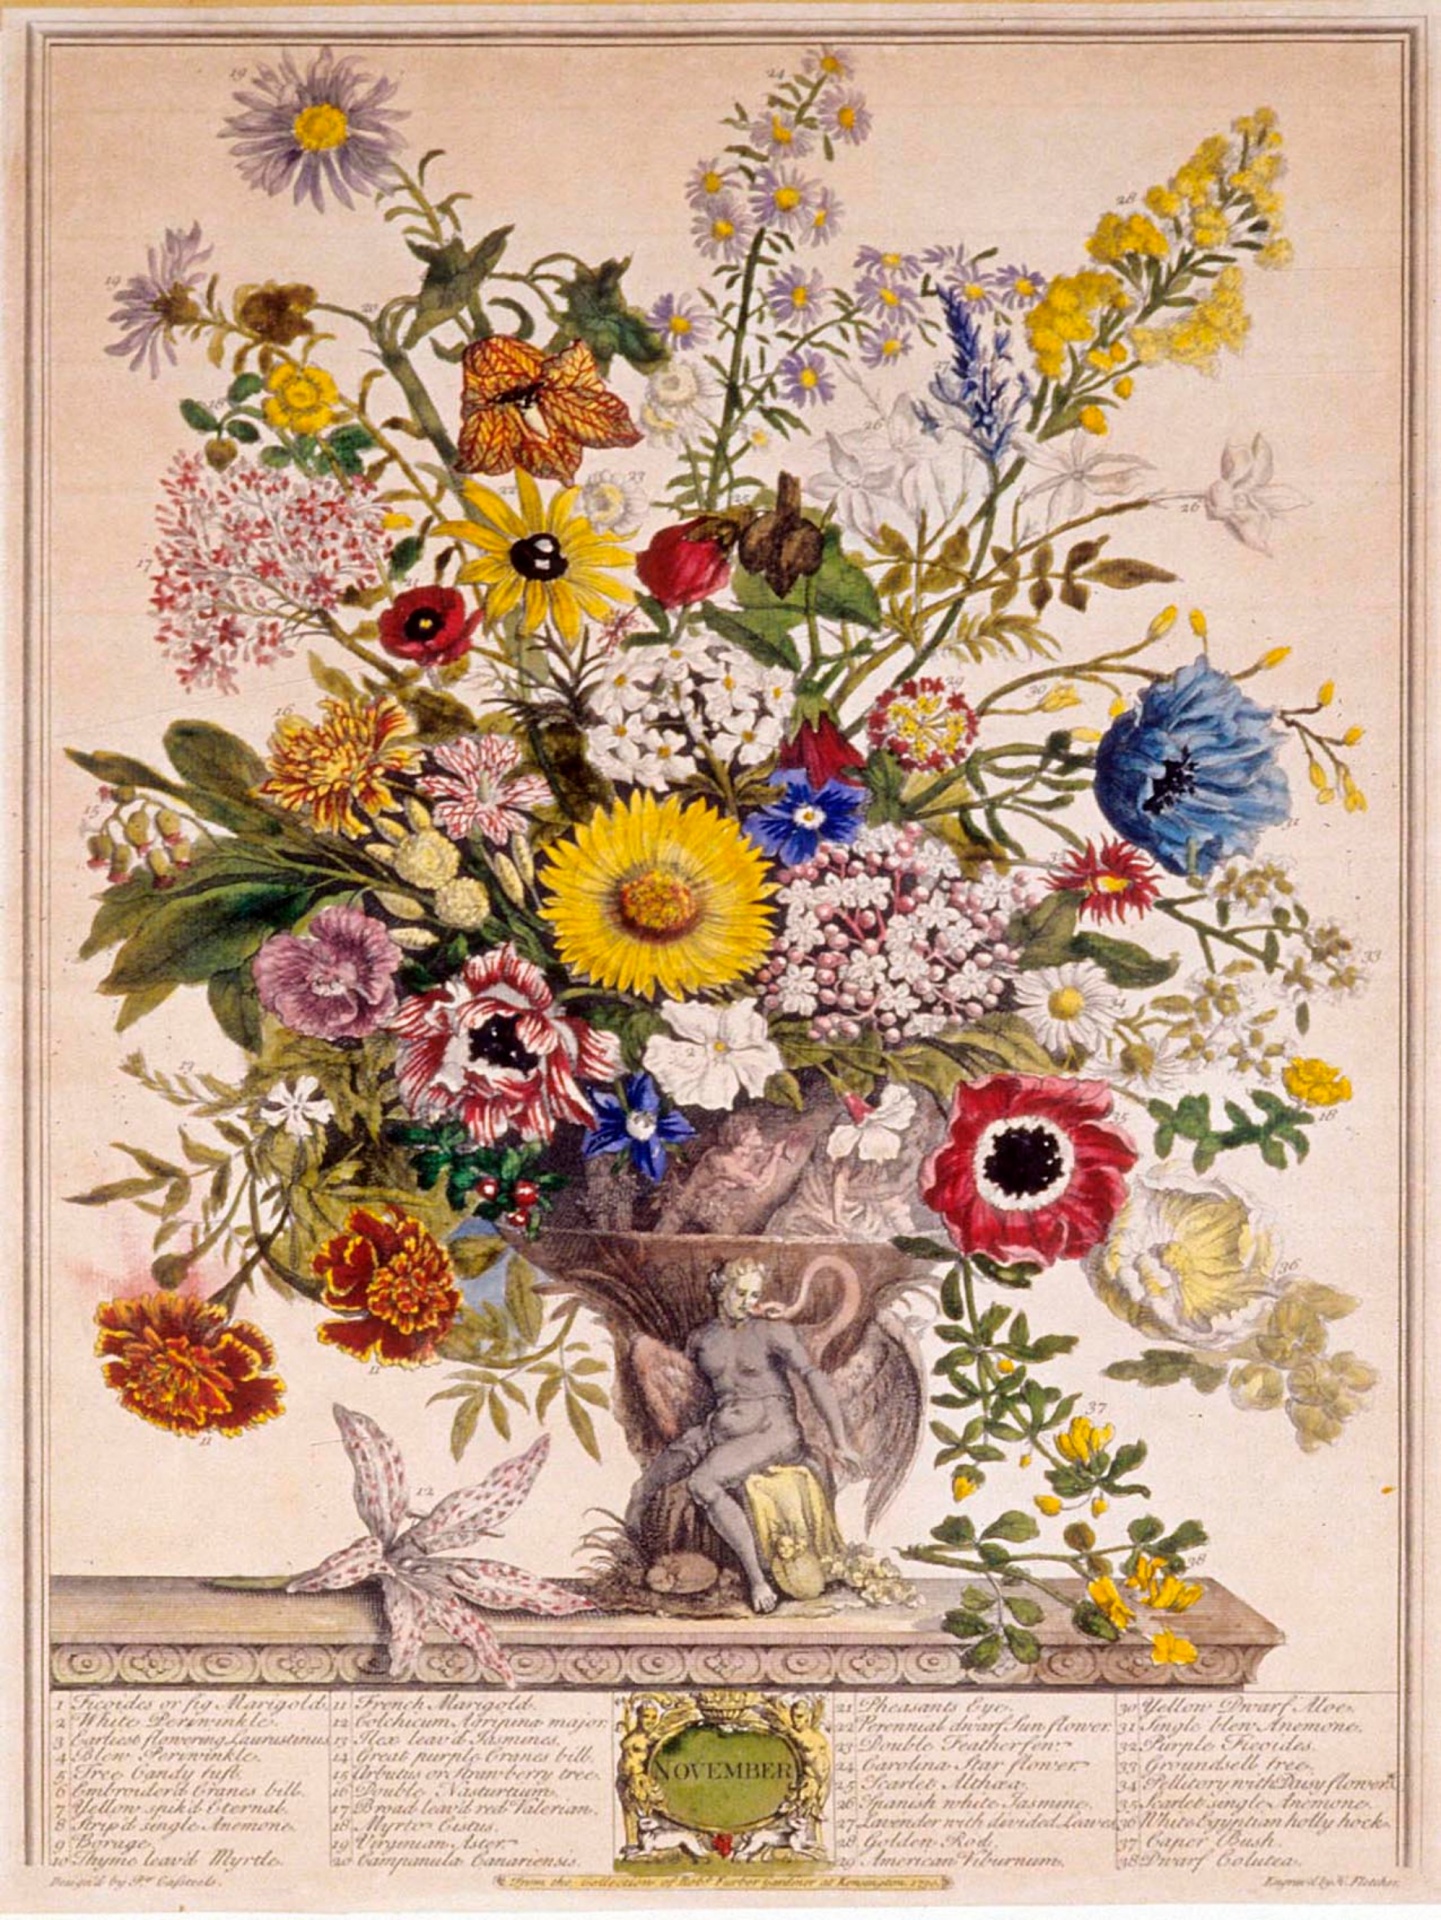 Vintage Flowers Illustration Art